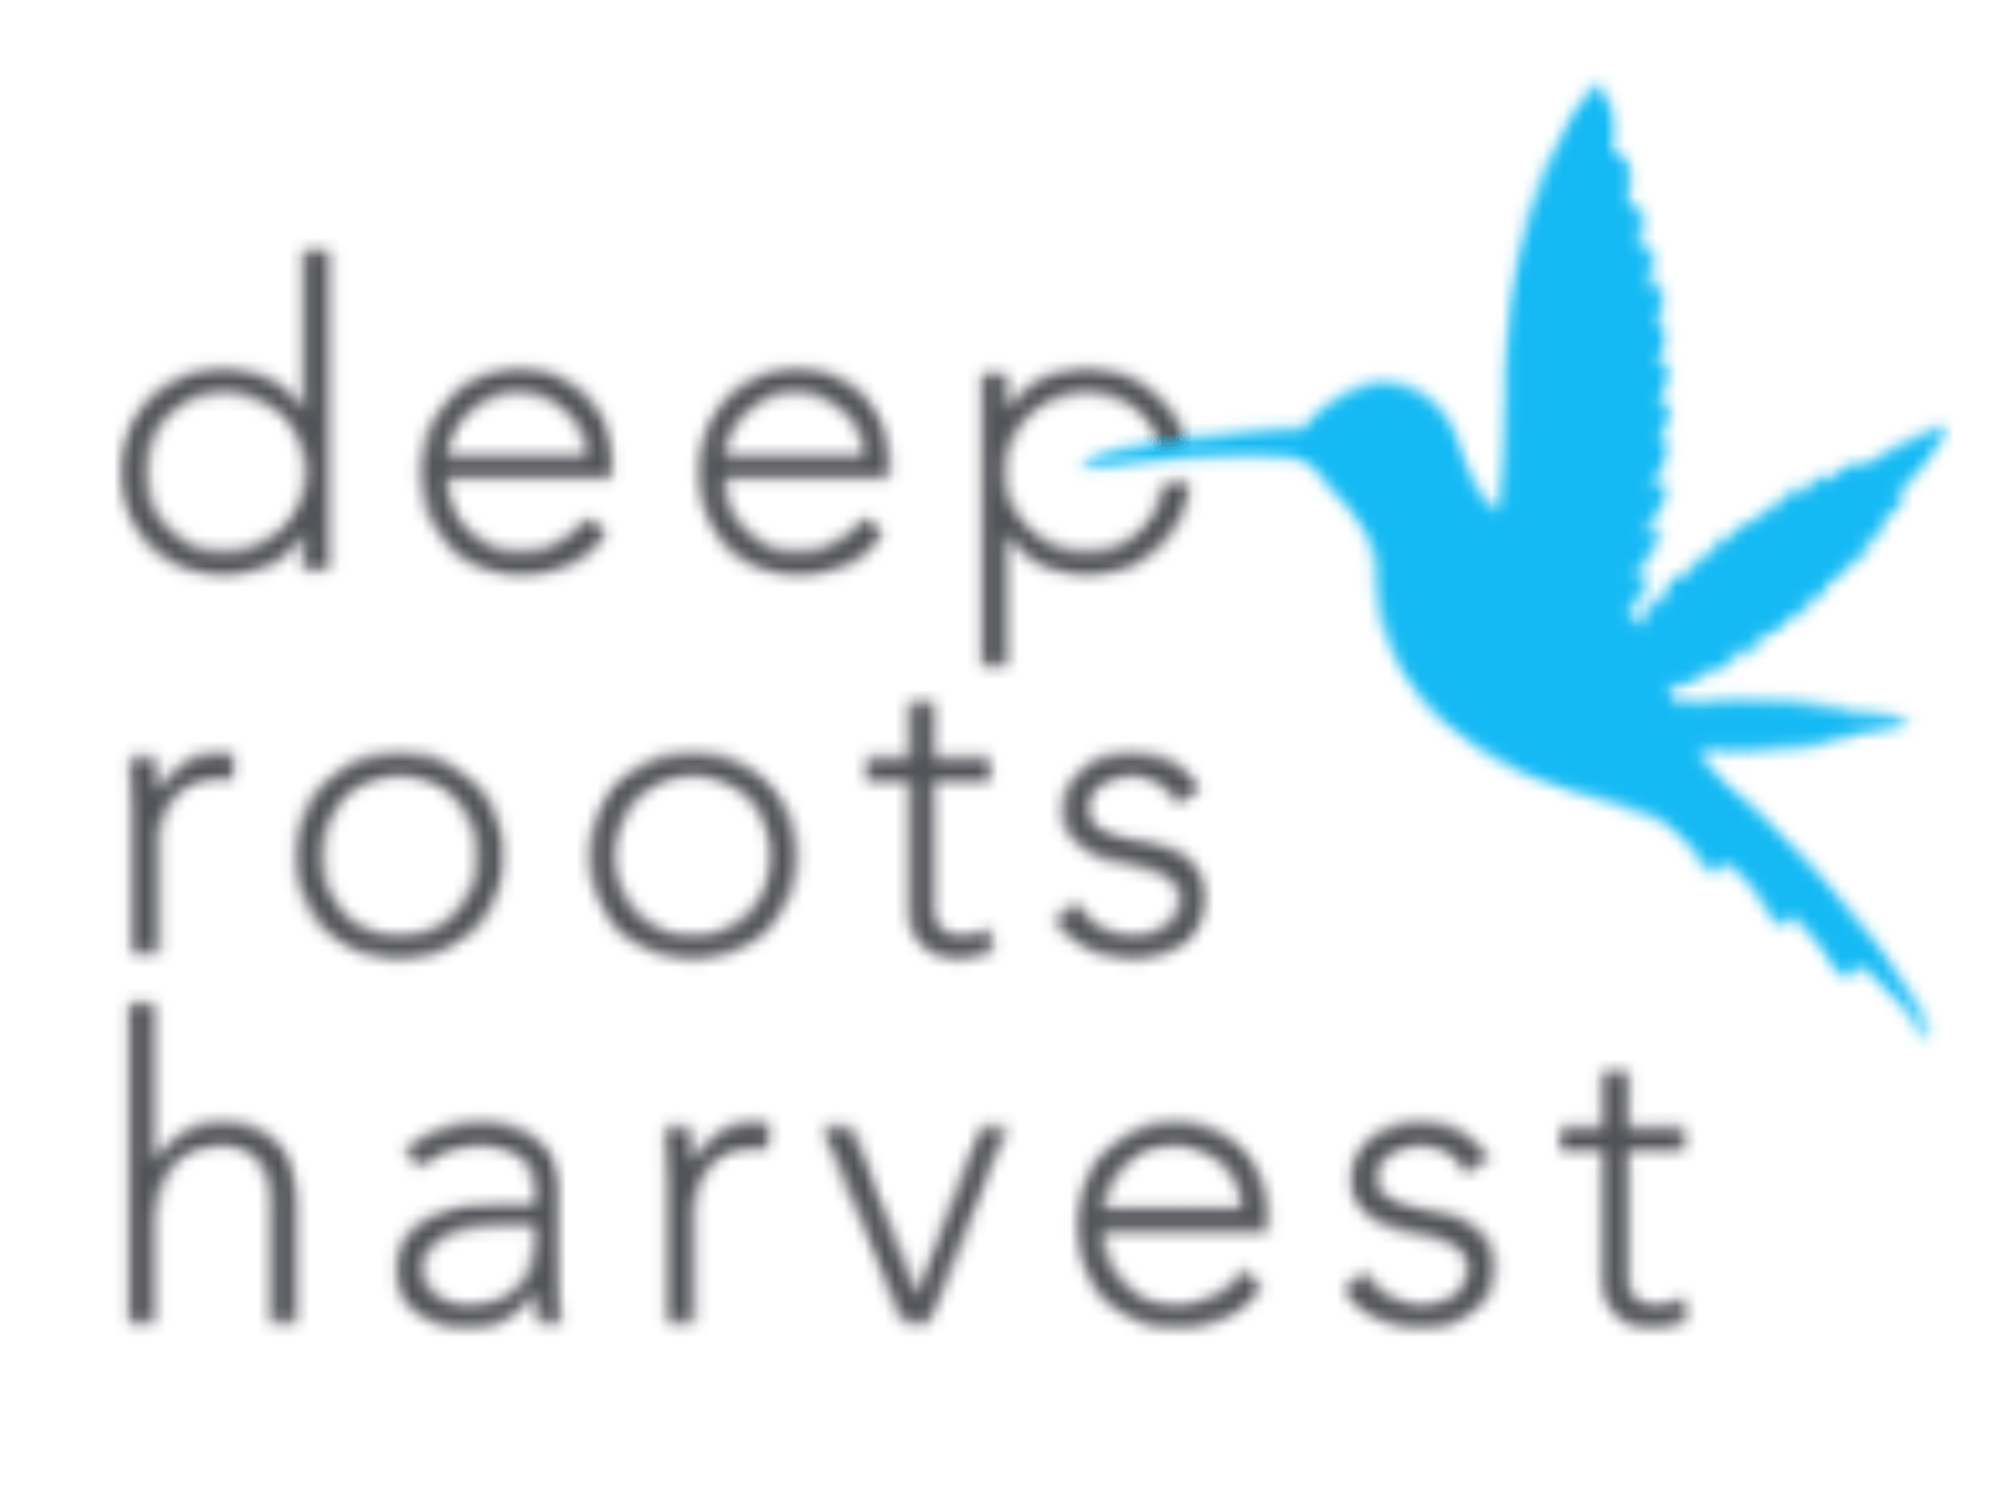 deep roots harvest wendover